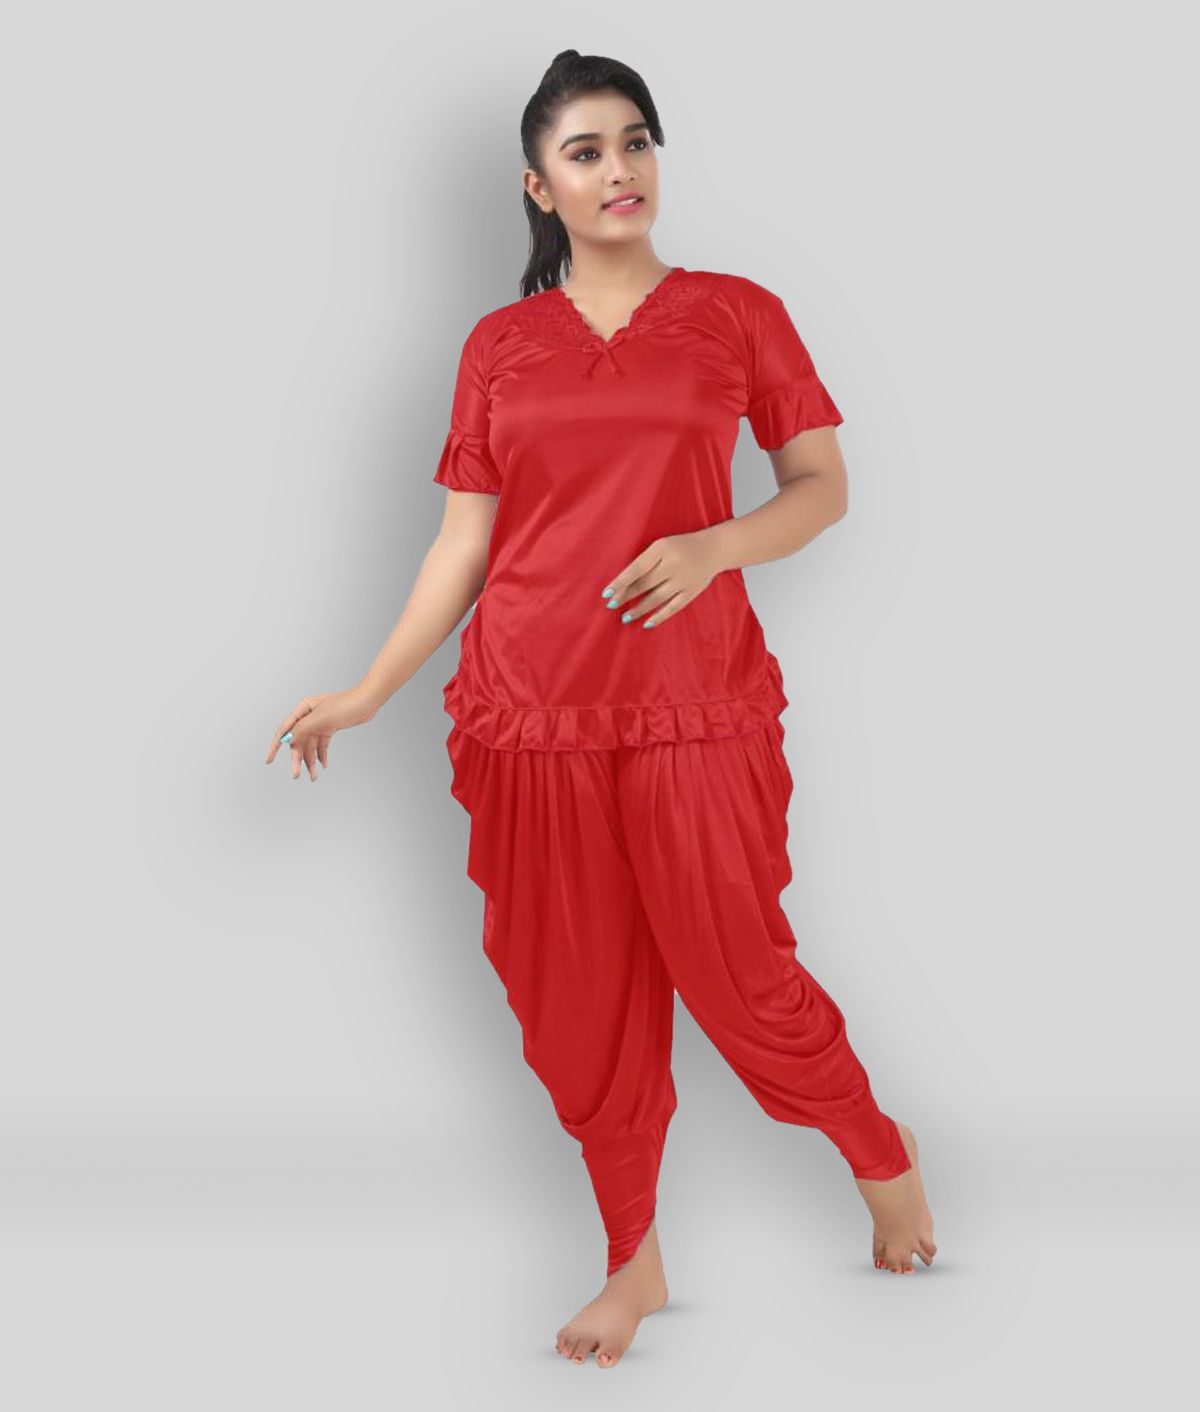     			SWANGIYA - Red Satin Women's Nightwear Nightsuit Sets ( Pack of 1 )